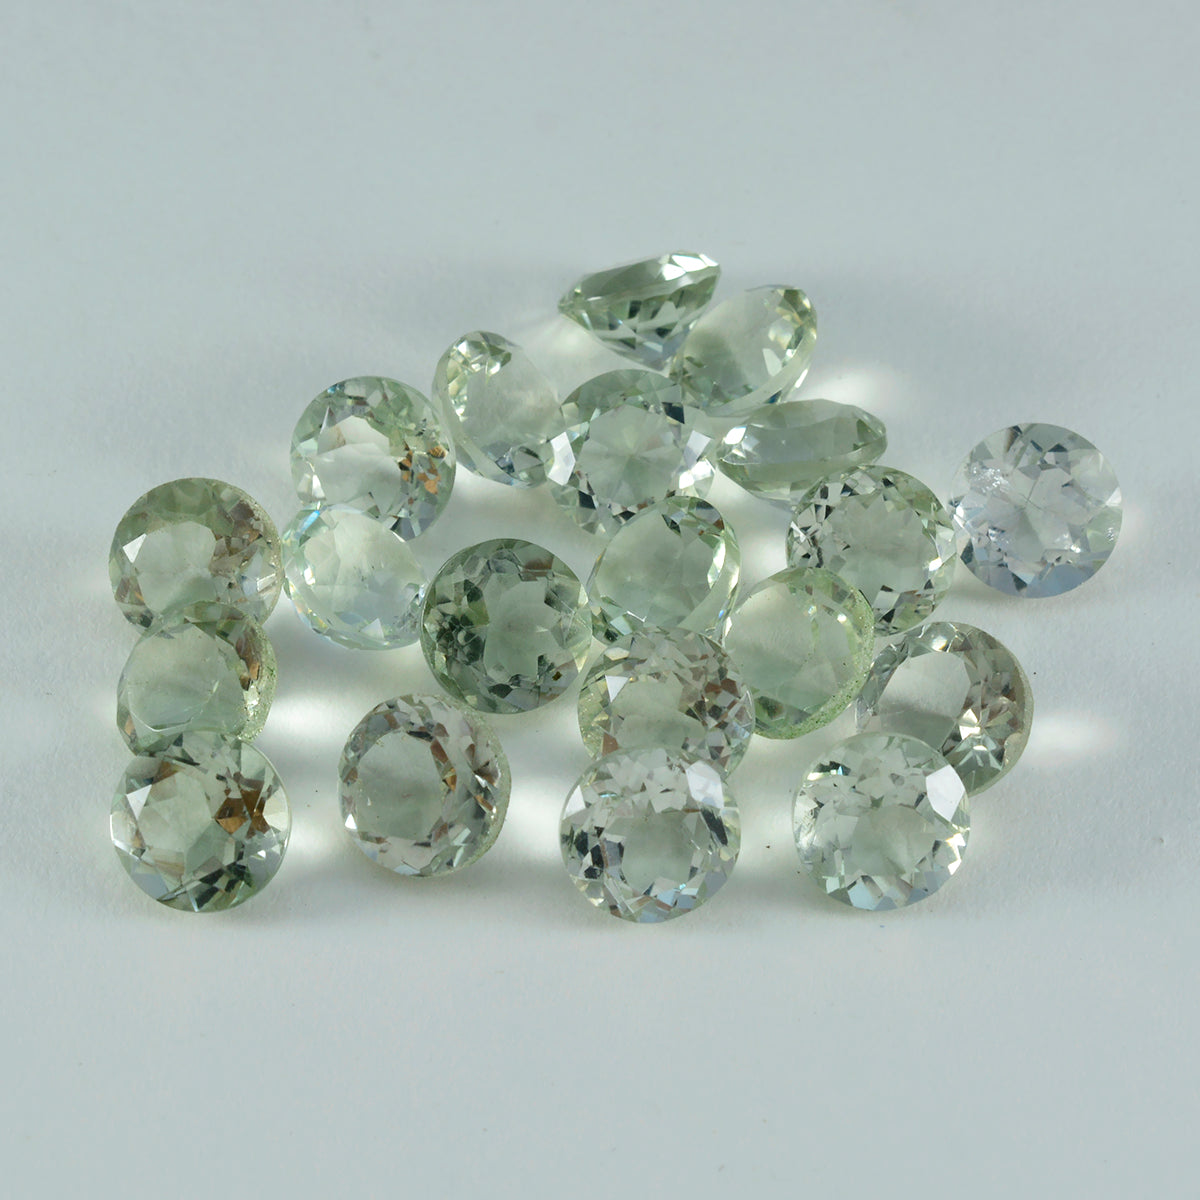 riyogems 1шт зеленый аметист ограненный 5x5 мм круглая форма красивые качественные свободные драгоценные камни